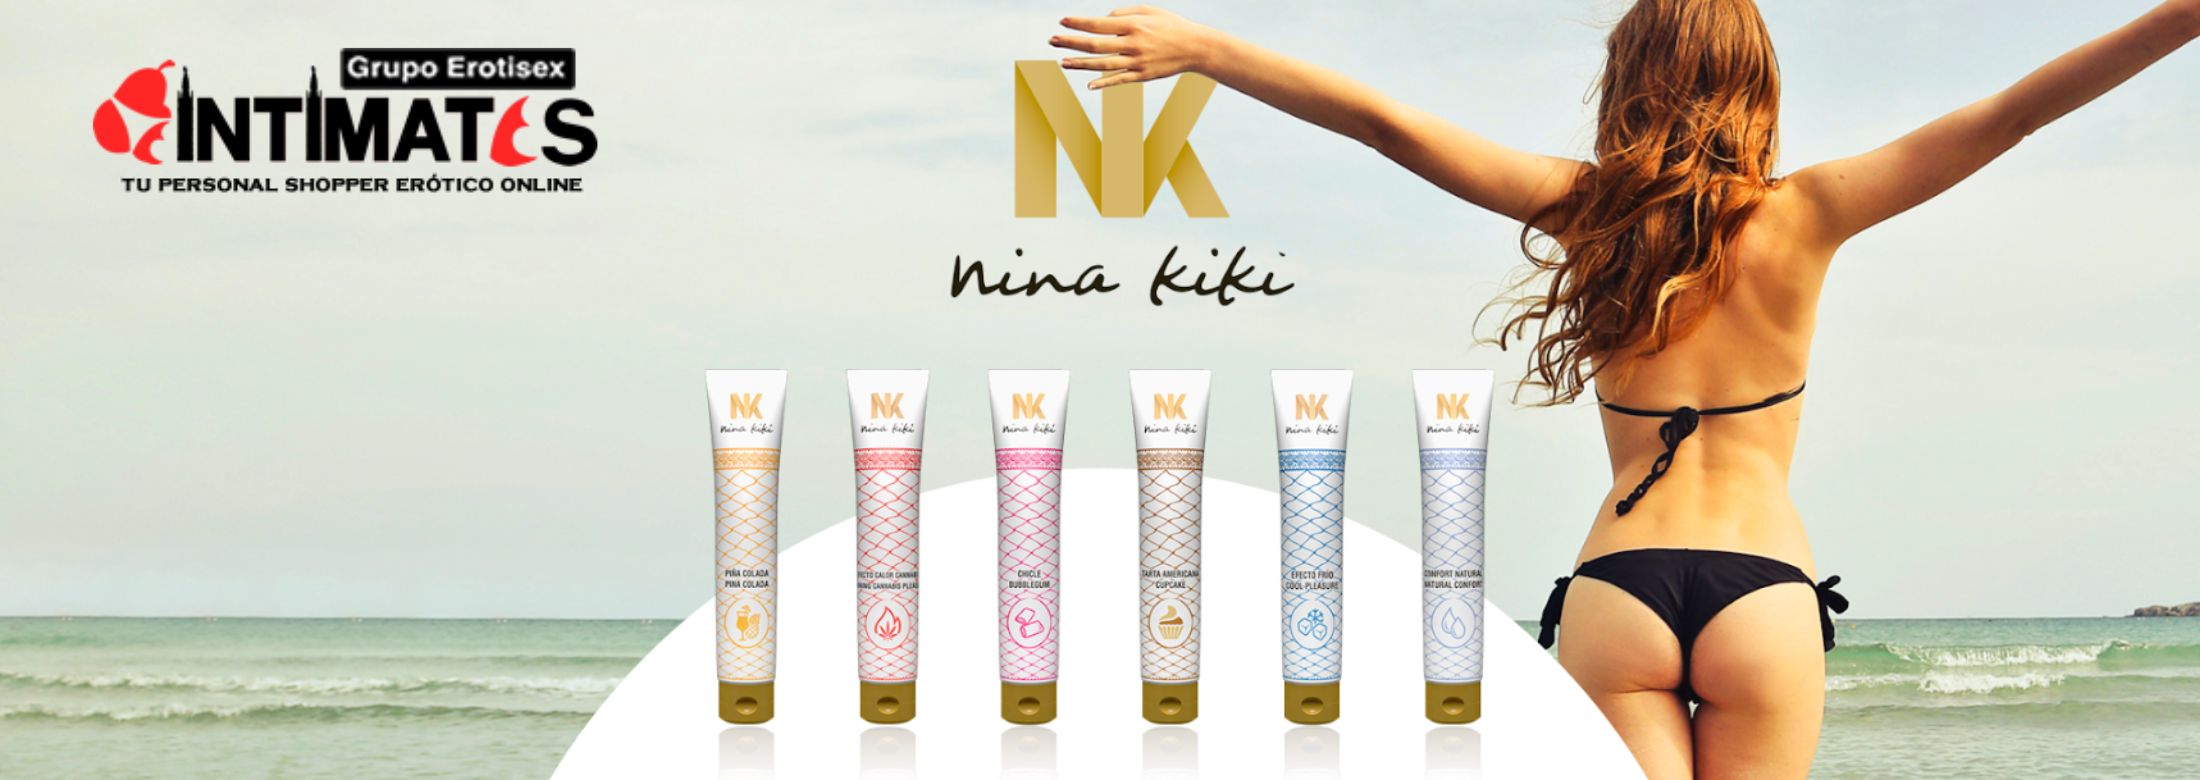 Nina Kiki el mejor lubricante a tu alcance en intimates.es "Tu Personal Shopper"